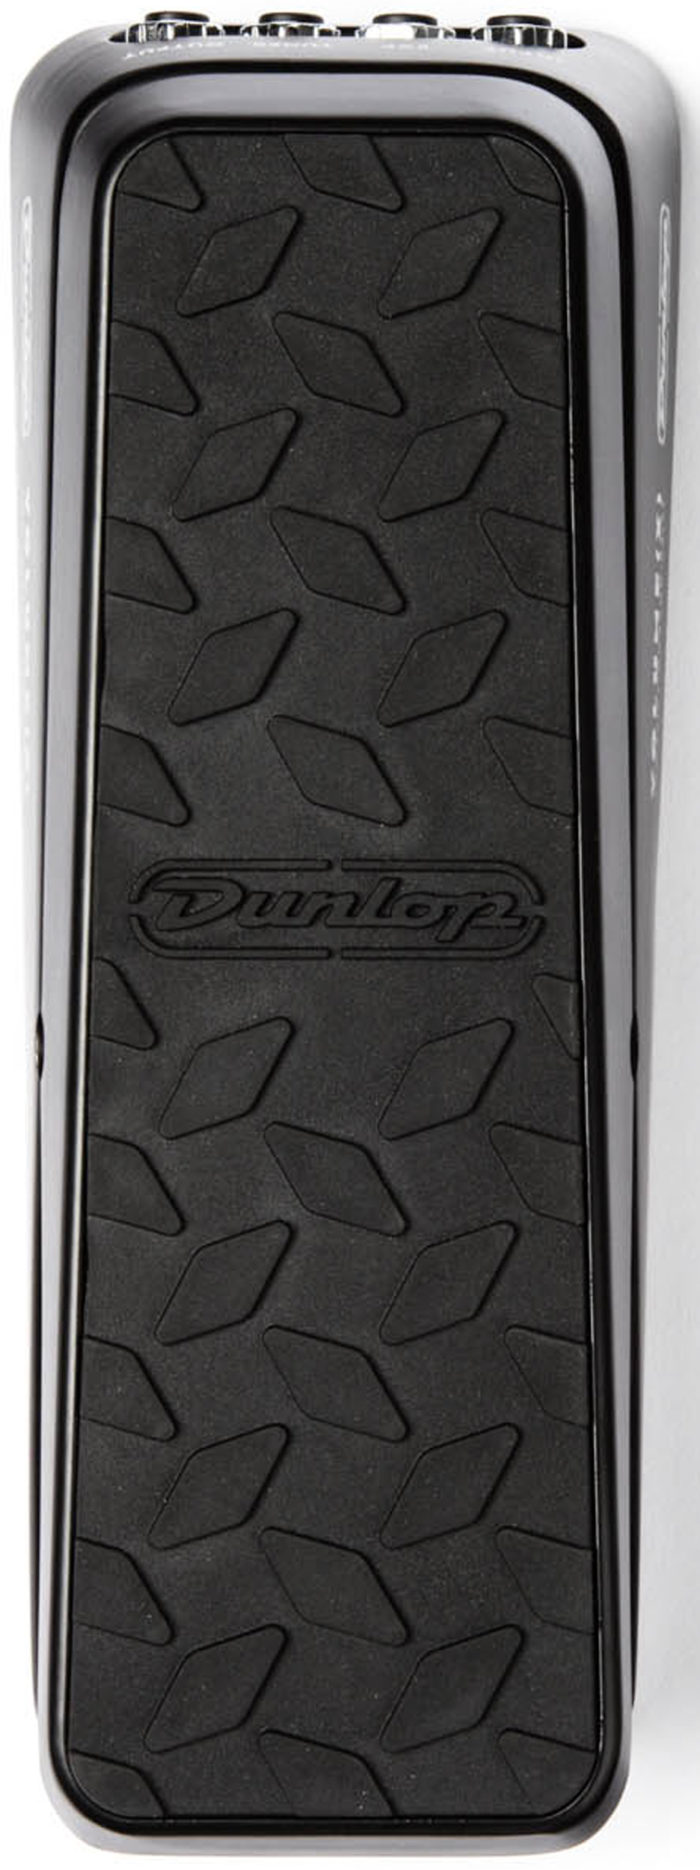 Dunlop DVP3 Vol/ Express Pedal